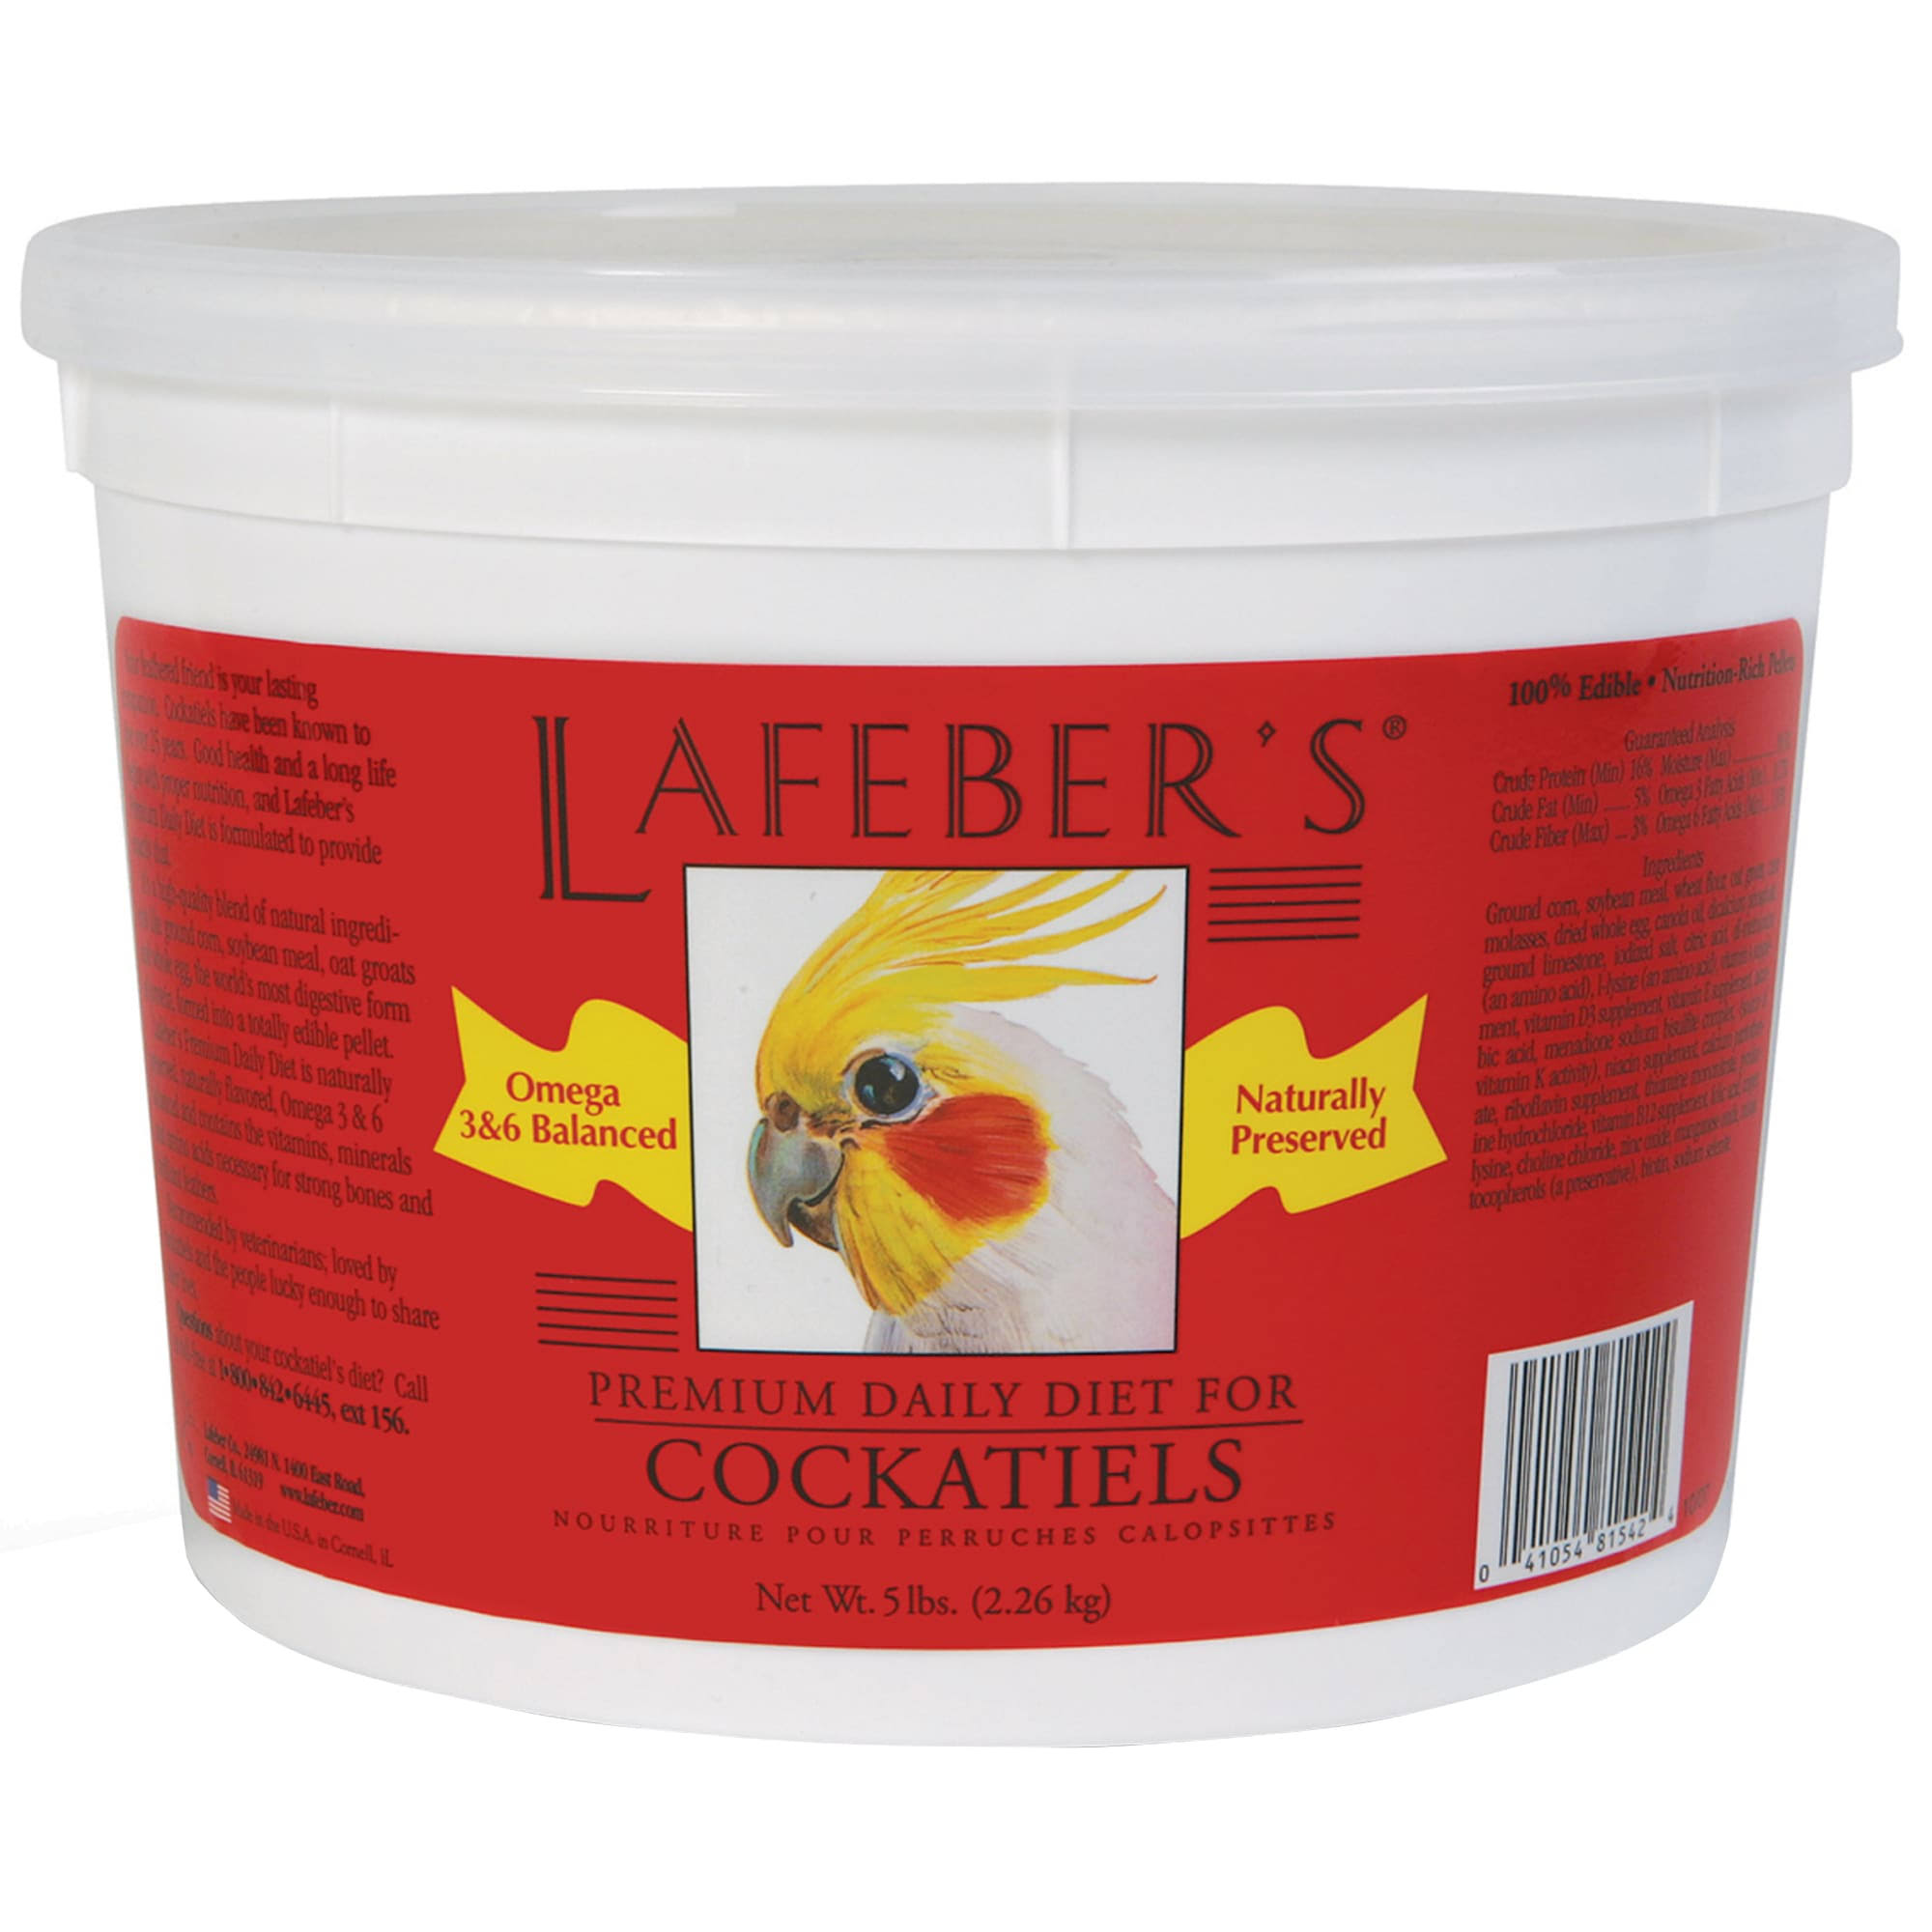 Lafeber's Premium Daily Diet Pellets for Cockatiels